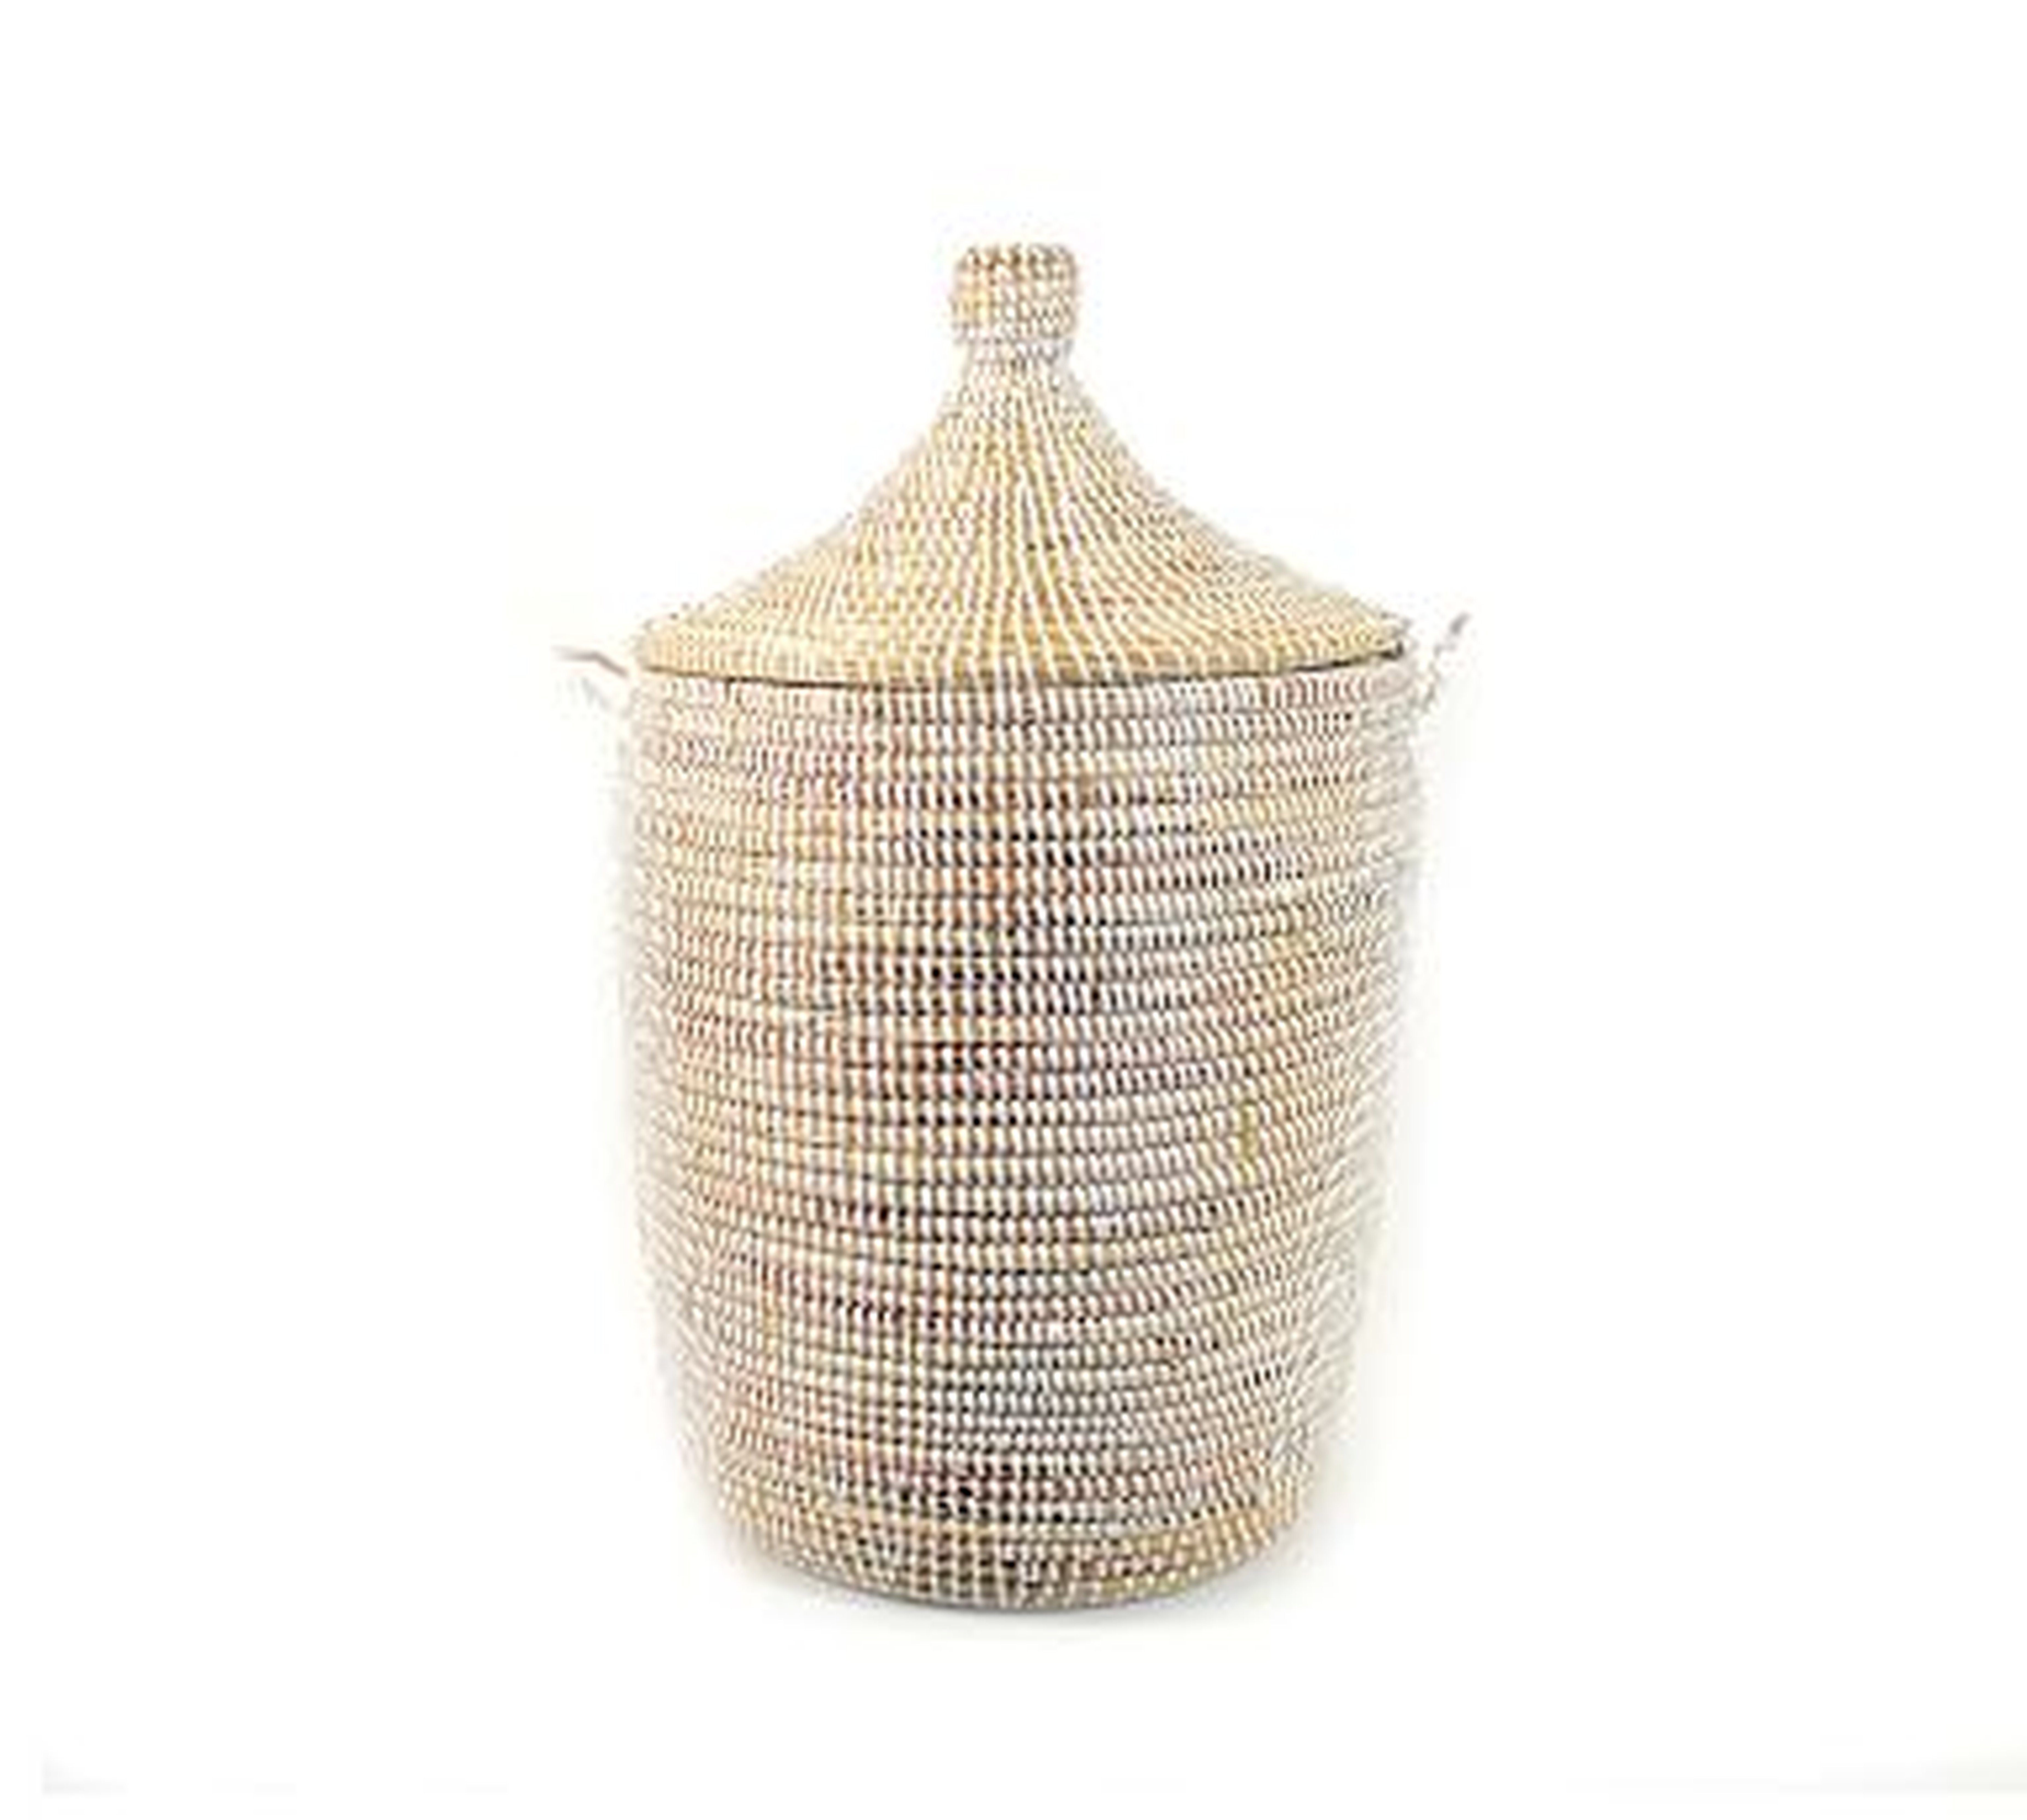 Tilda Woven Basket, White, Medium - Pottery Barn